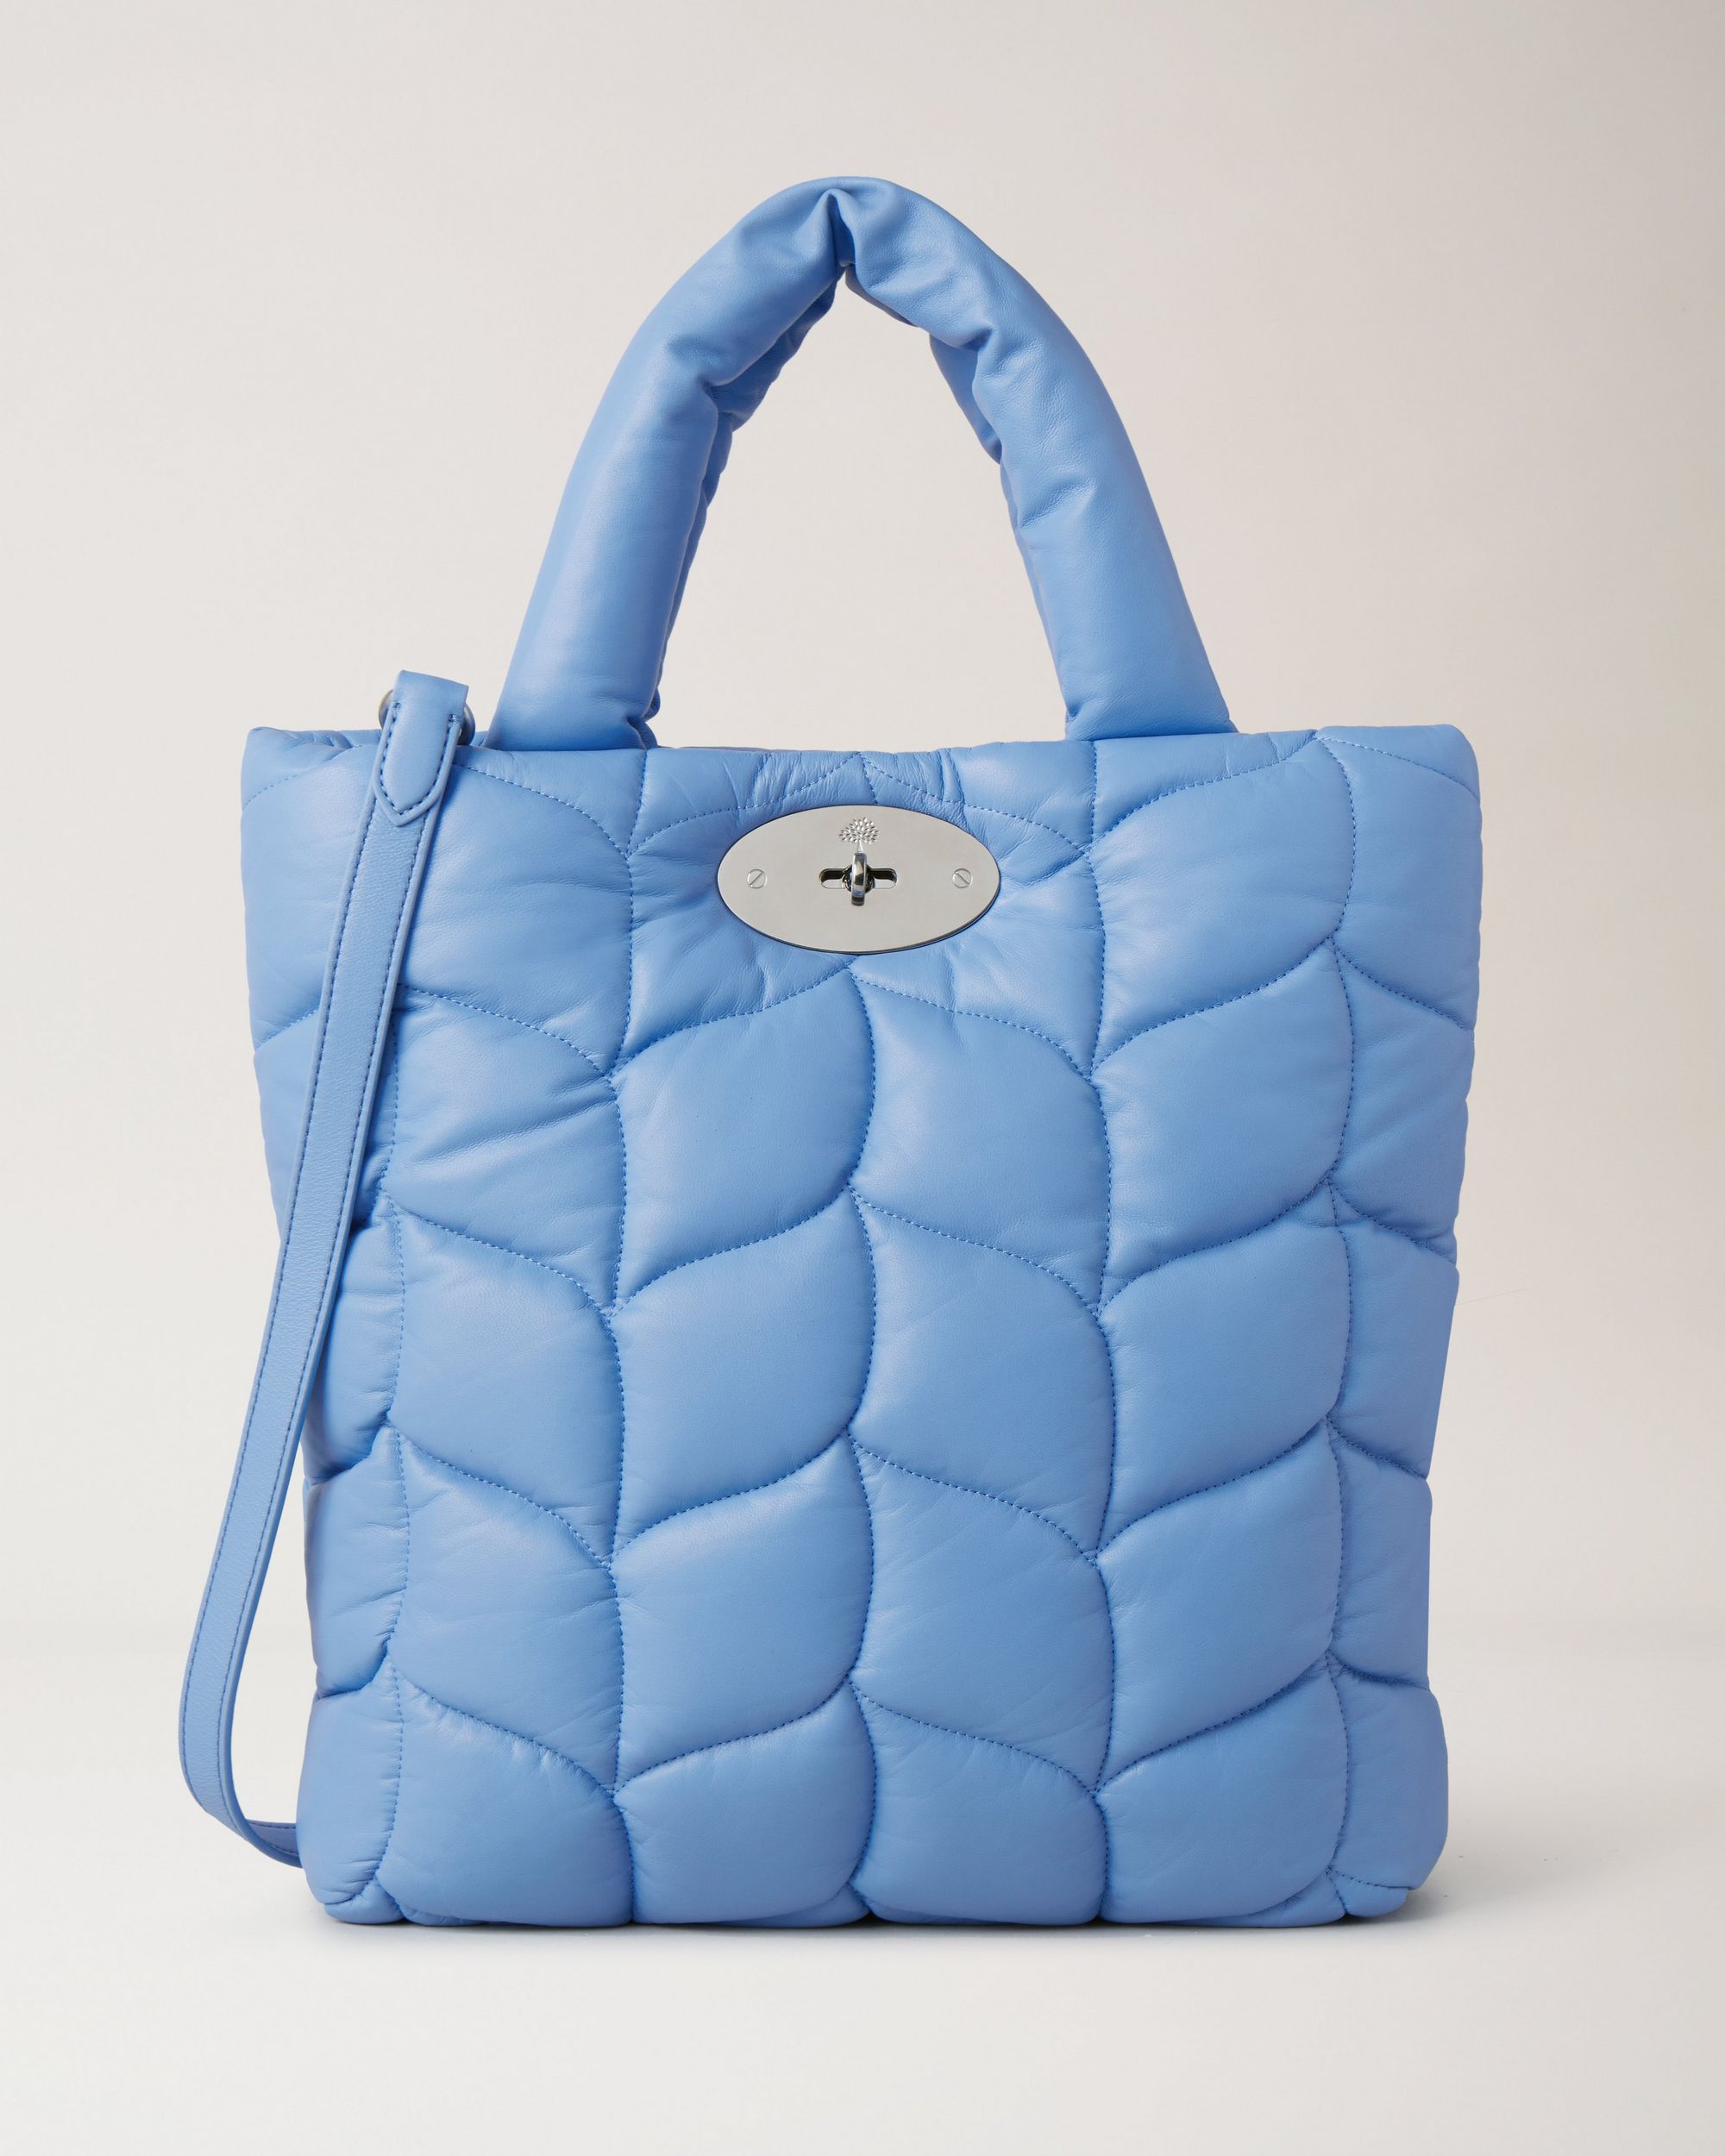 Blue luxury tote bag